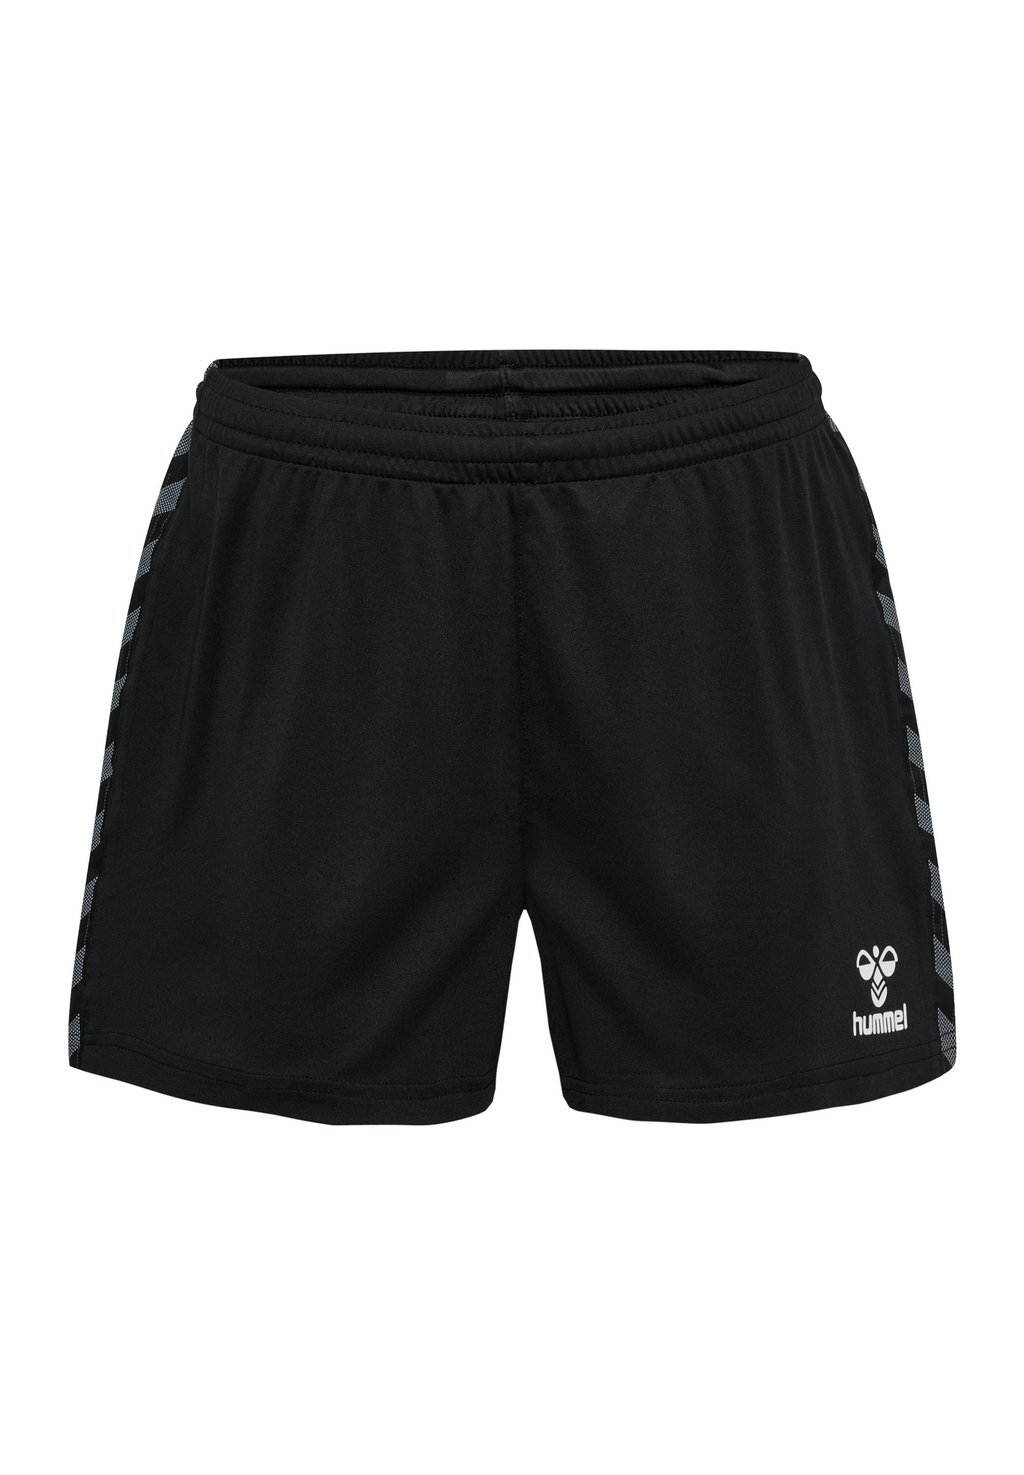 Спортивные шорты AUTHENTIC Hummel, цвет black спортивные брюки 3 4 authentic hummel цвет black